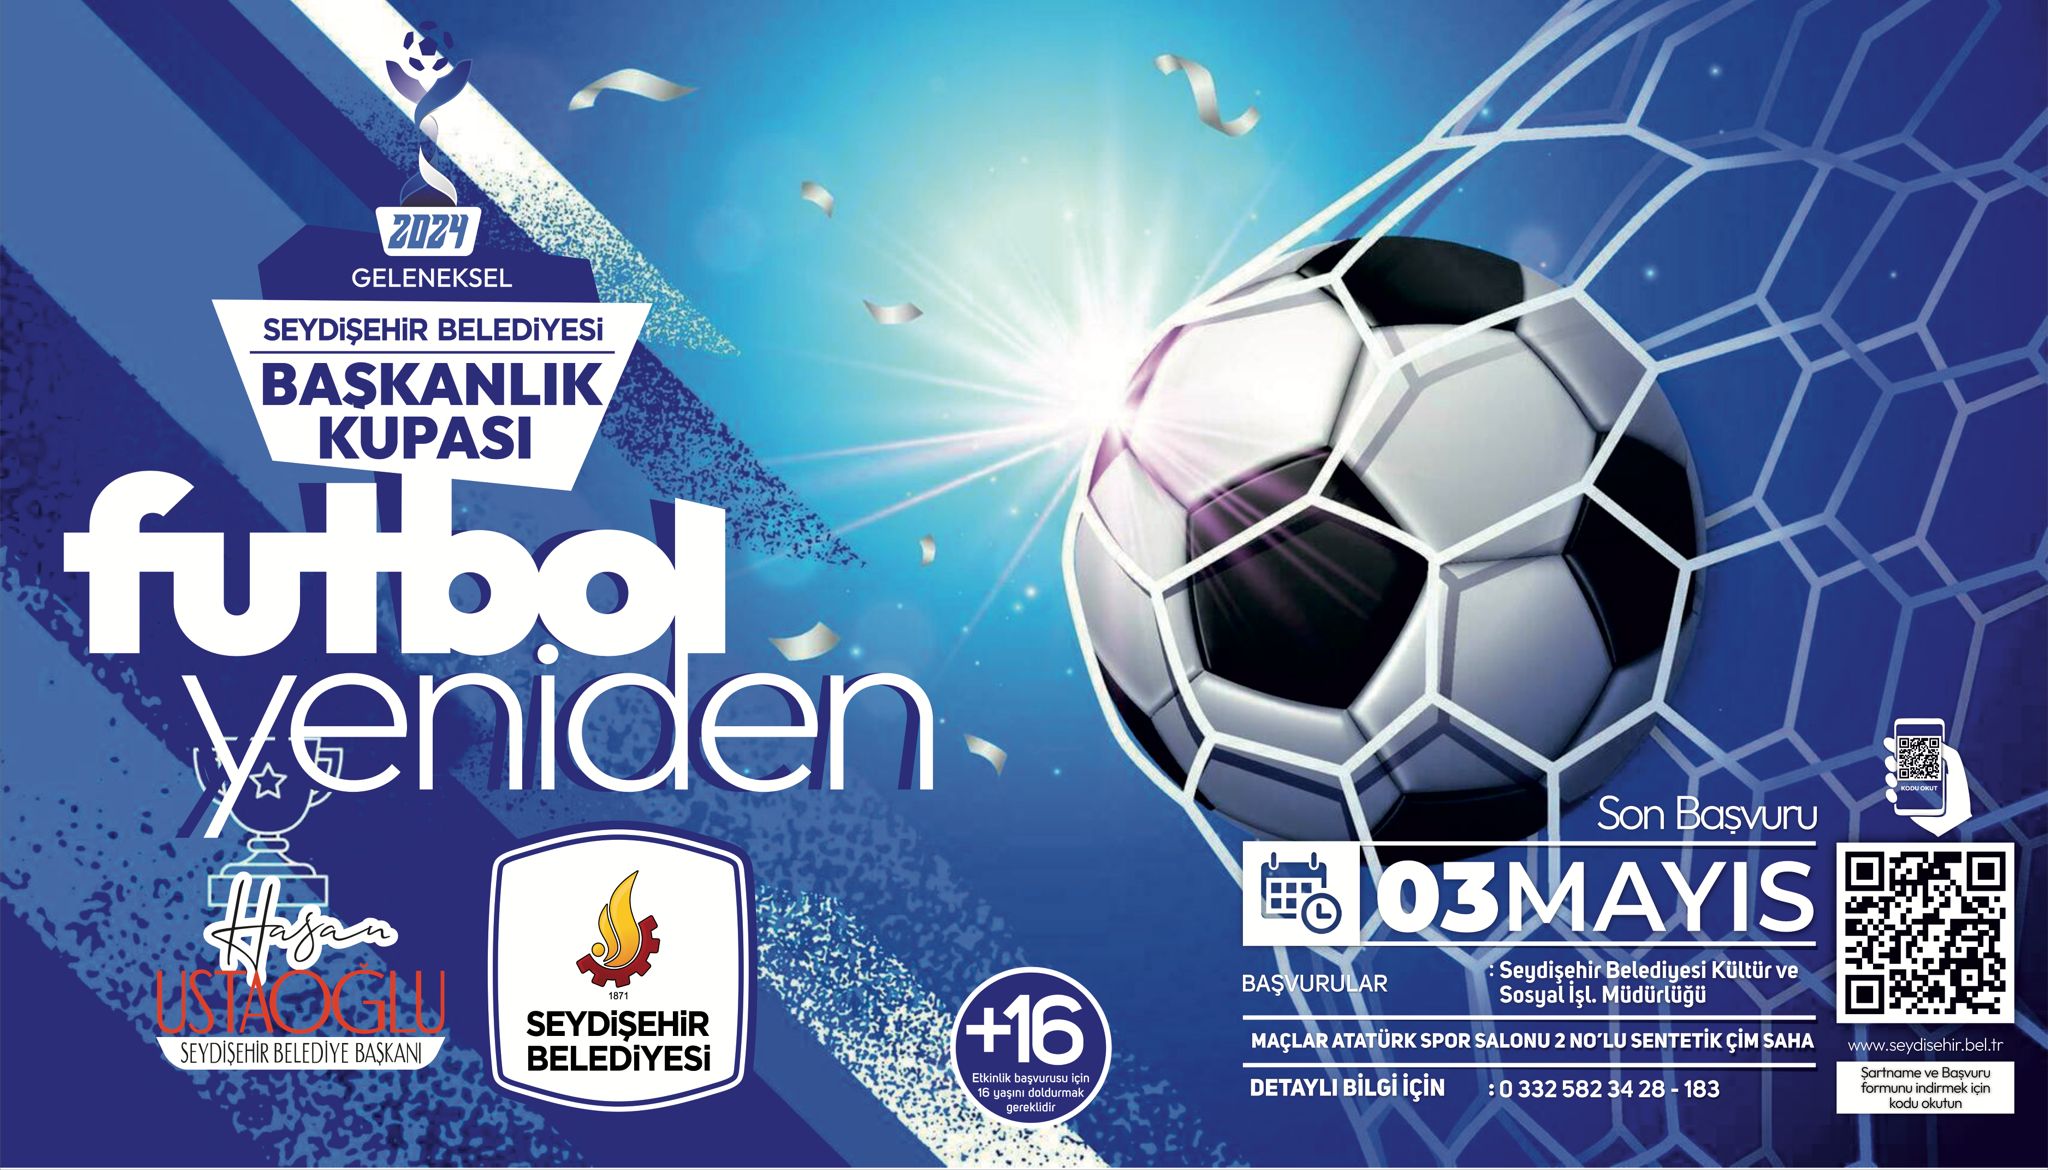 Seydişehir Belediyesi başkanlık kupası futbol turnuvası başlıyor